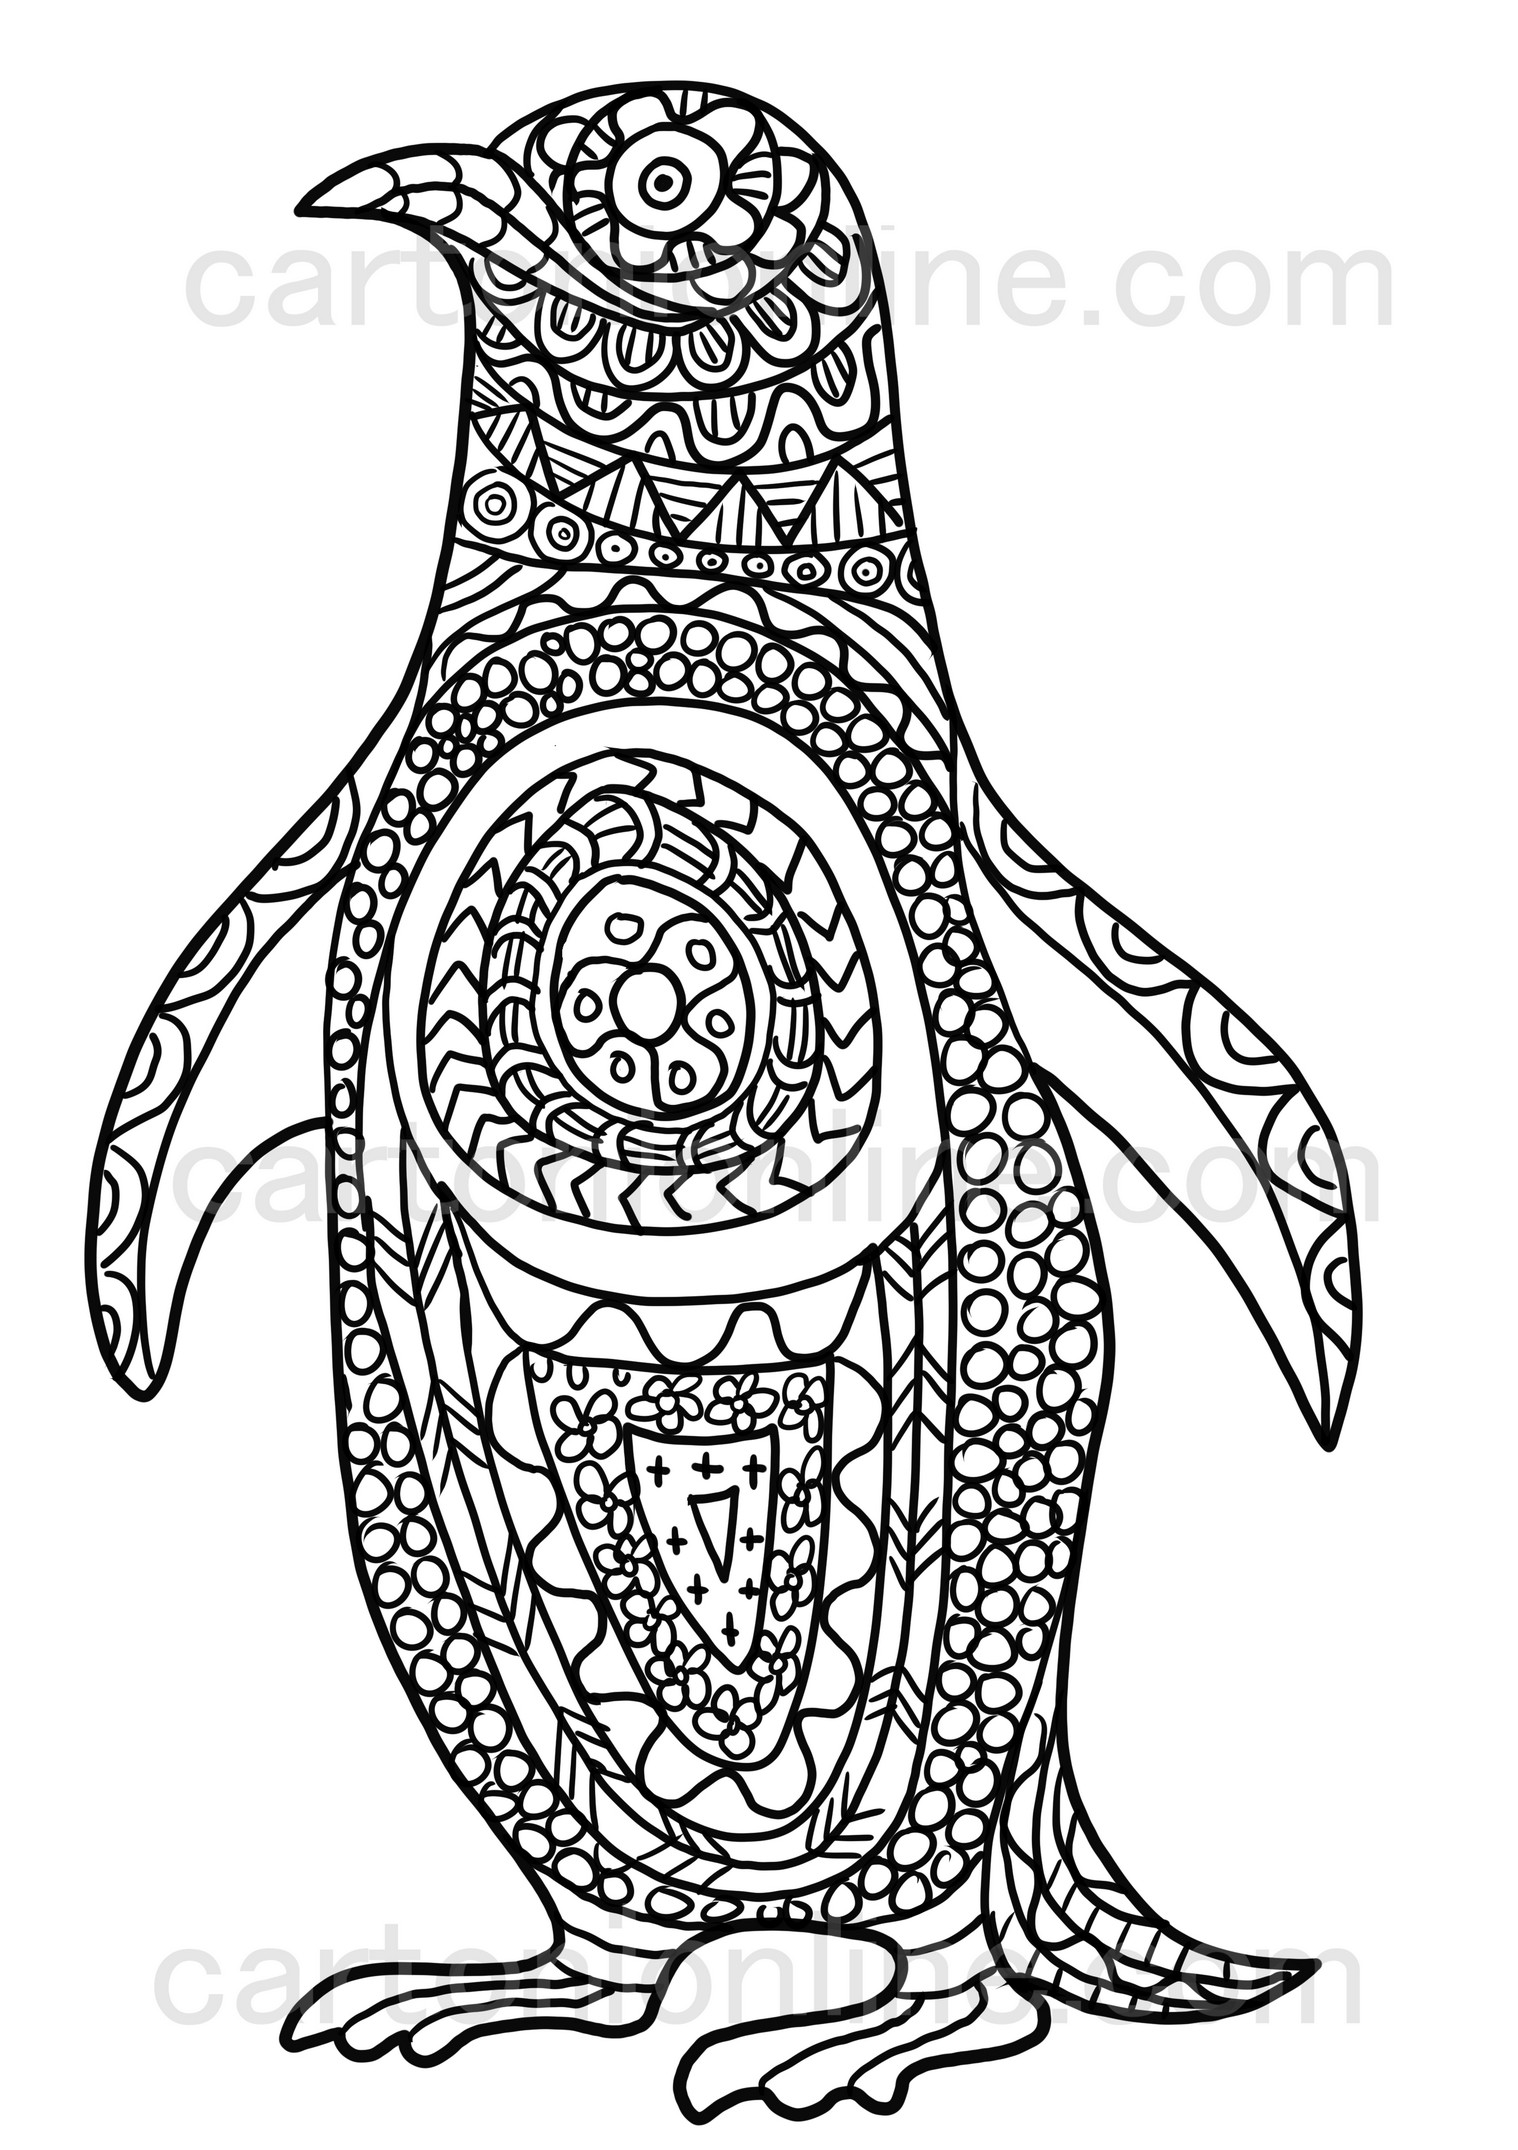 Disegno da colorare di pinguino mandala